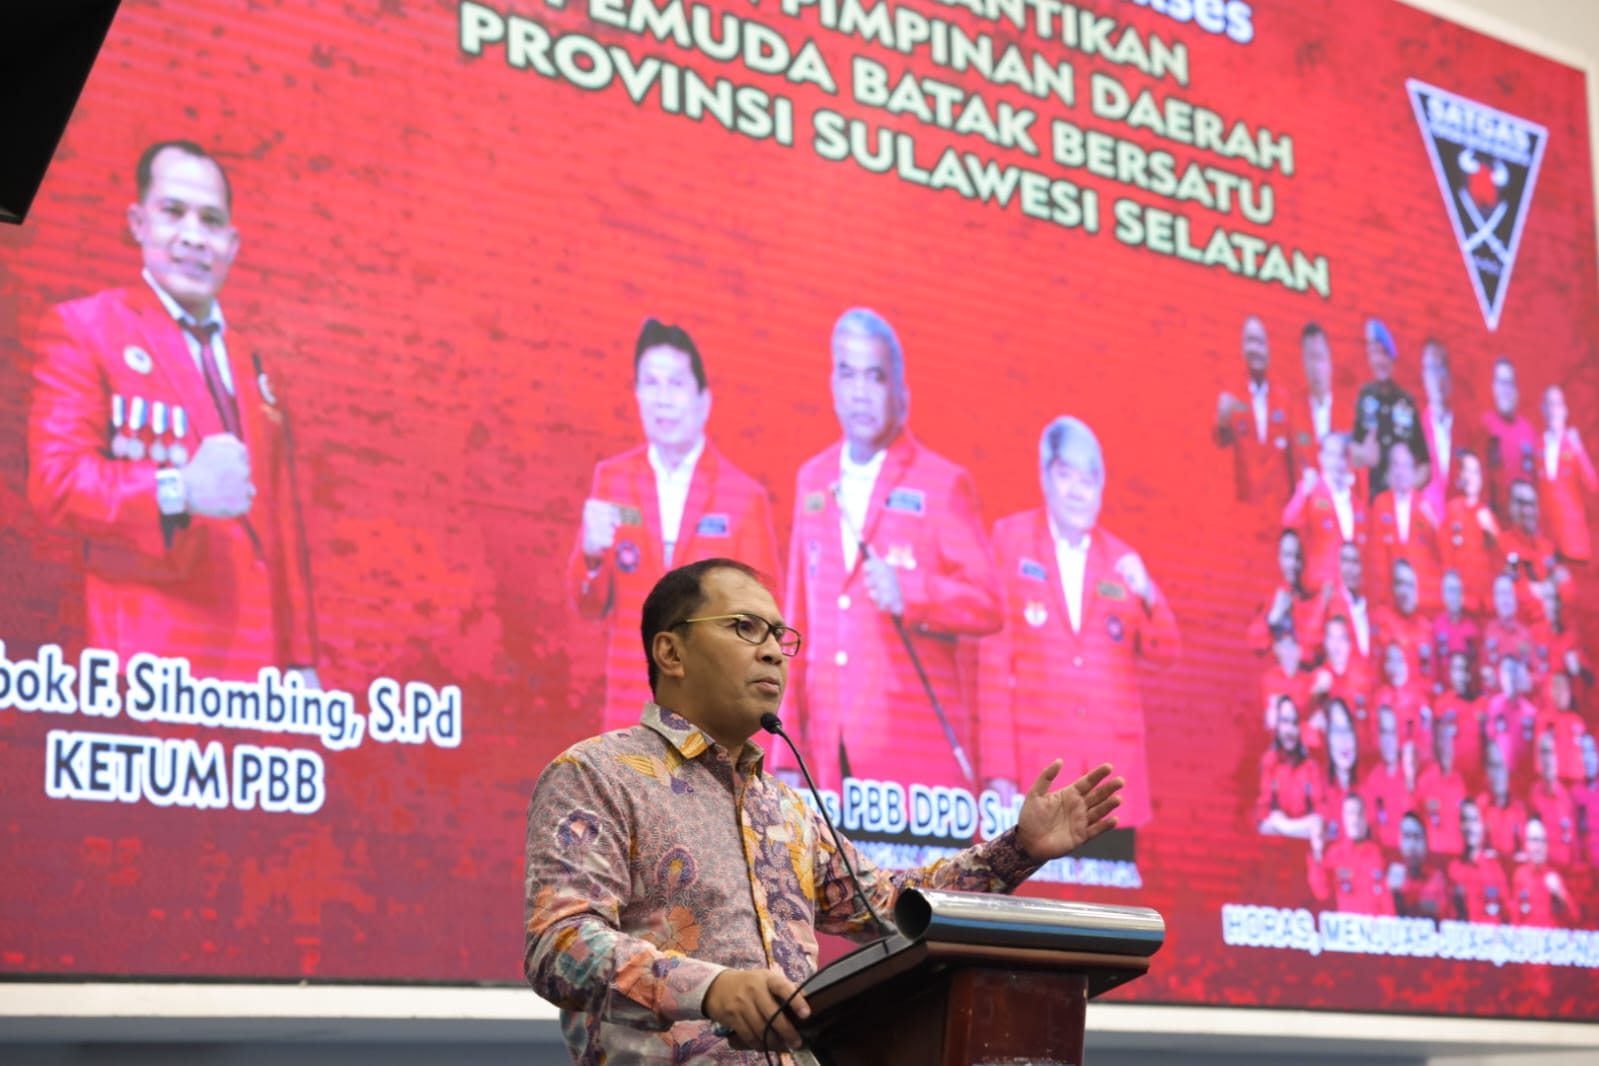 Danny Pomanto Ajak Pemuda Batak Bersatu Jadikan Makassar Makin Inklusif